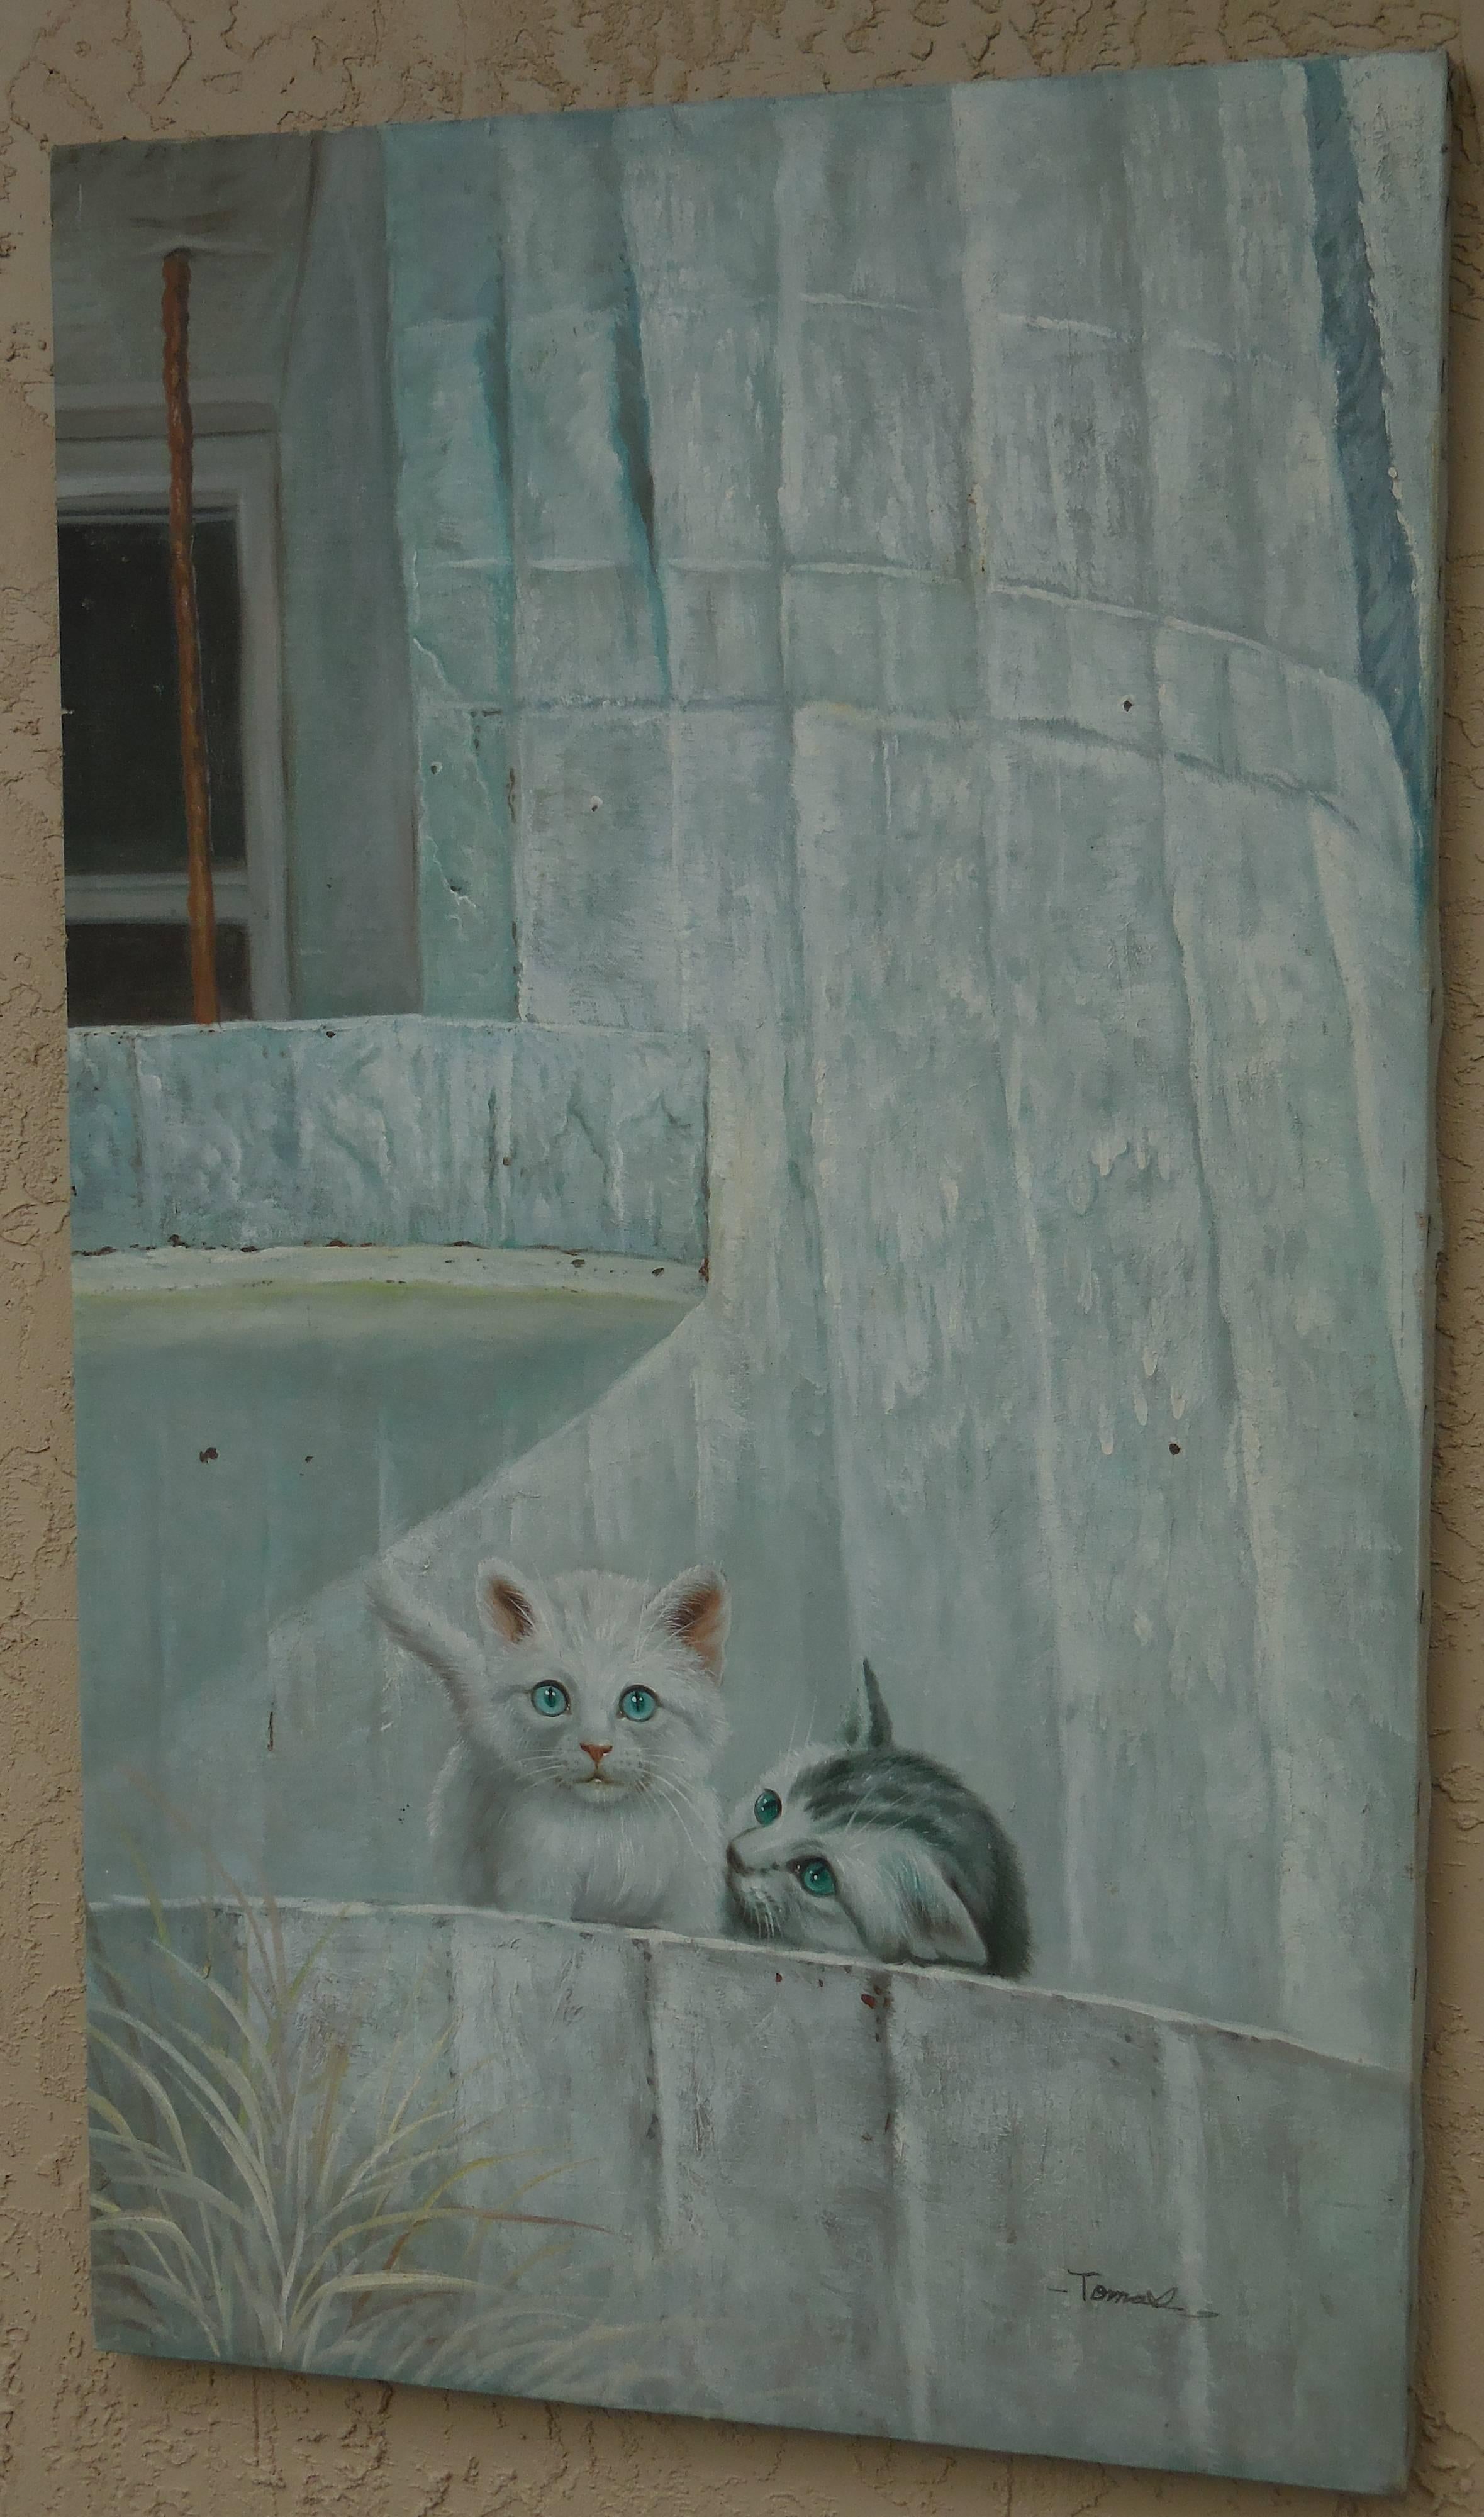 Belle peinture à l'huile sur toile des années 1960 représentant deux mignons chatons l'un à côté de l'autre, peinture vivante et détaillée, superbe suspension murale pour les amoureux des chats.
Signé par l'artiste en bas. Le cadre n'est pas